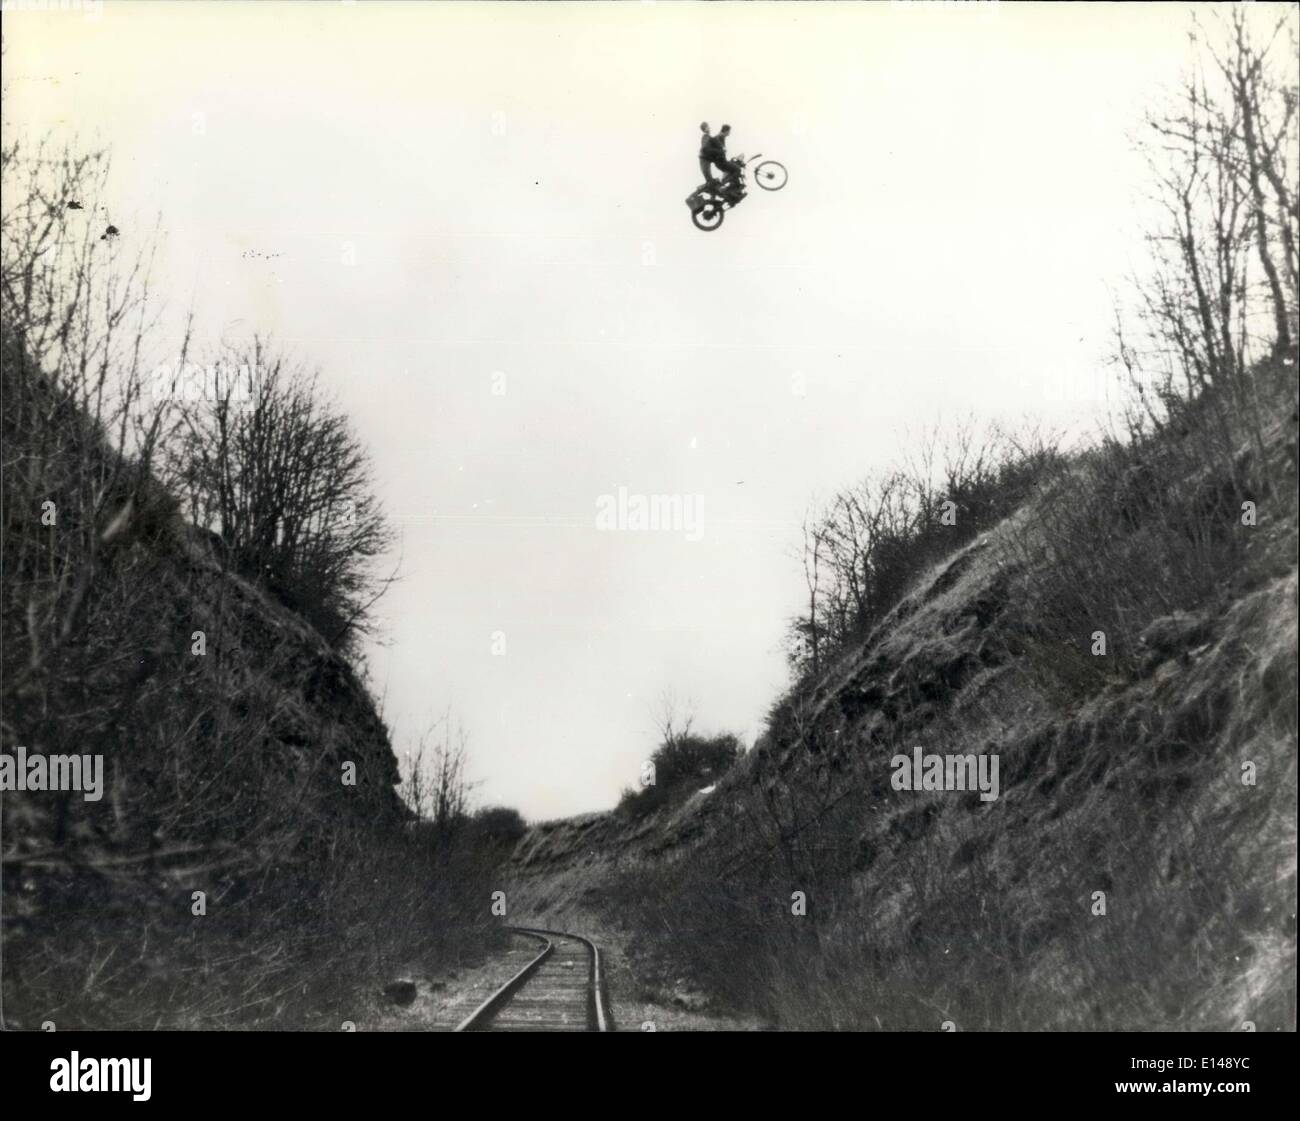 Le 17 avril 2012 - Eddie Kidd sur sa machine volante : 18 ans Eddie Kidd, excellé même ses propres exploits casse-cou, lorsqu'il a atteint 145 pieds à travers un chemin de fer avec une coupe d'argent factice au siège de son vélo. L'audacieux sauter à travers la voie de chemin de fer de 80 pieds au-dessous de lui, a eu lieu à Shepton Mallet dans le Somerset, faisait partie d'une scène d'un nouveau film de guerre. Banque D'Images